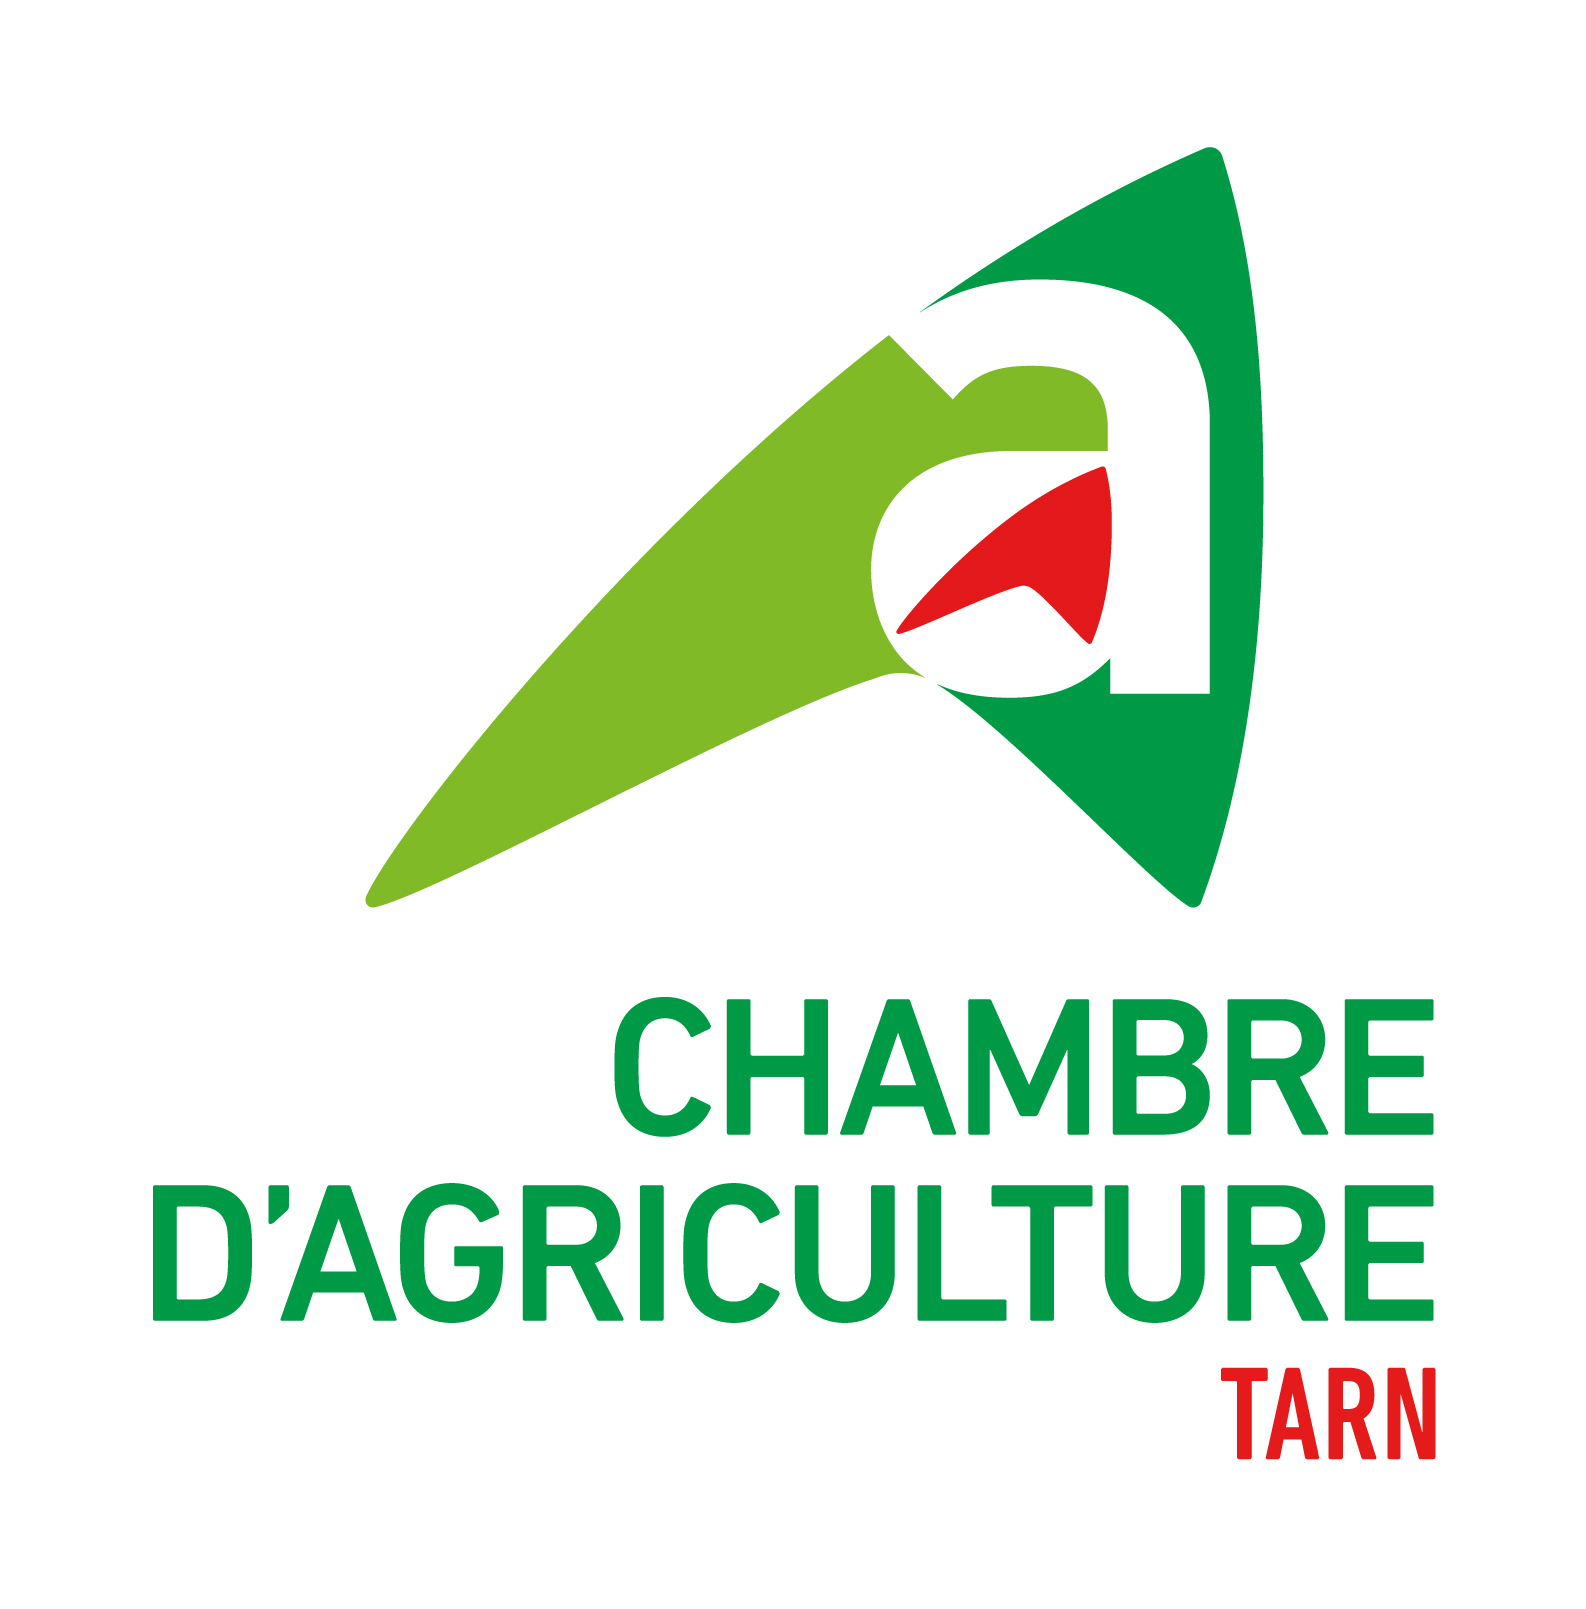 Chambre d'agriculture du Tarn, retour à la page d'accueil